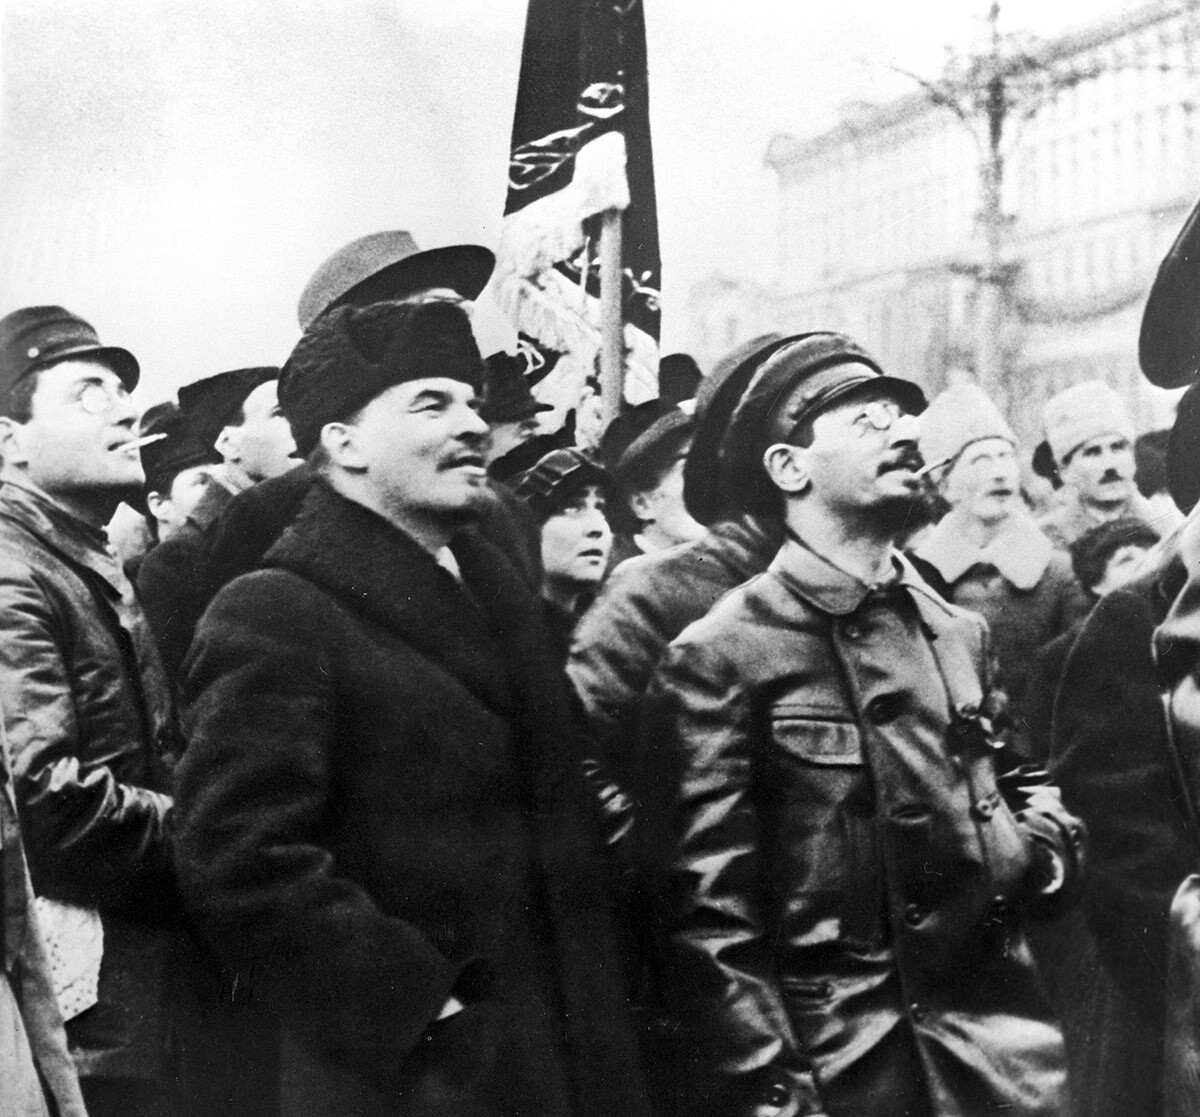 Vladimir Lenin and Yakov Sverdlov in 1918